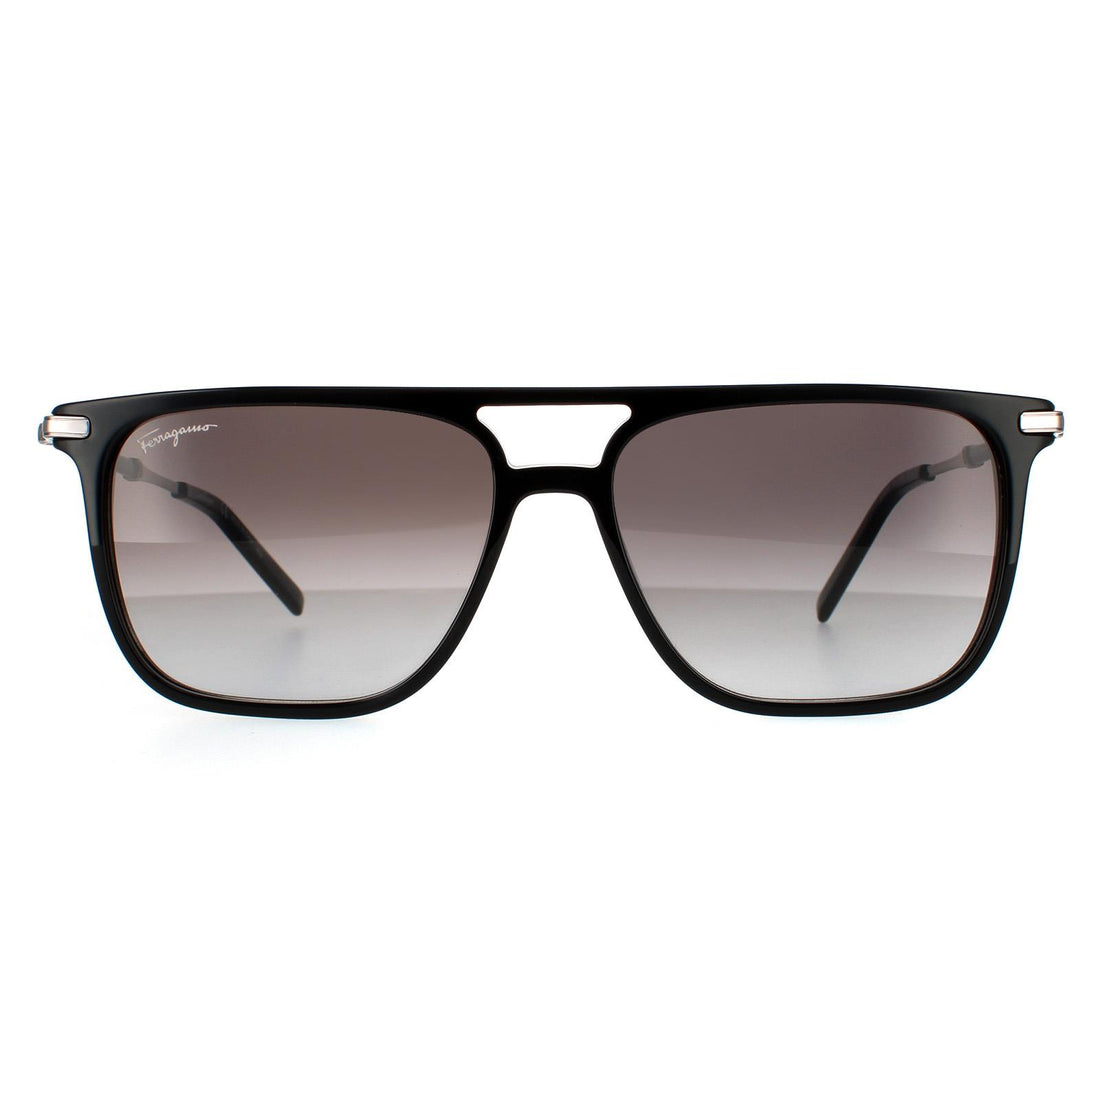 Salvatore Ferragamo SF966S Sunglasses Black and Silver / Grey Gradient